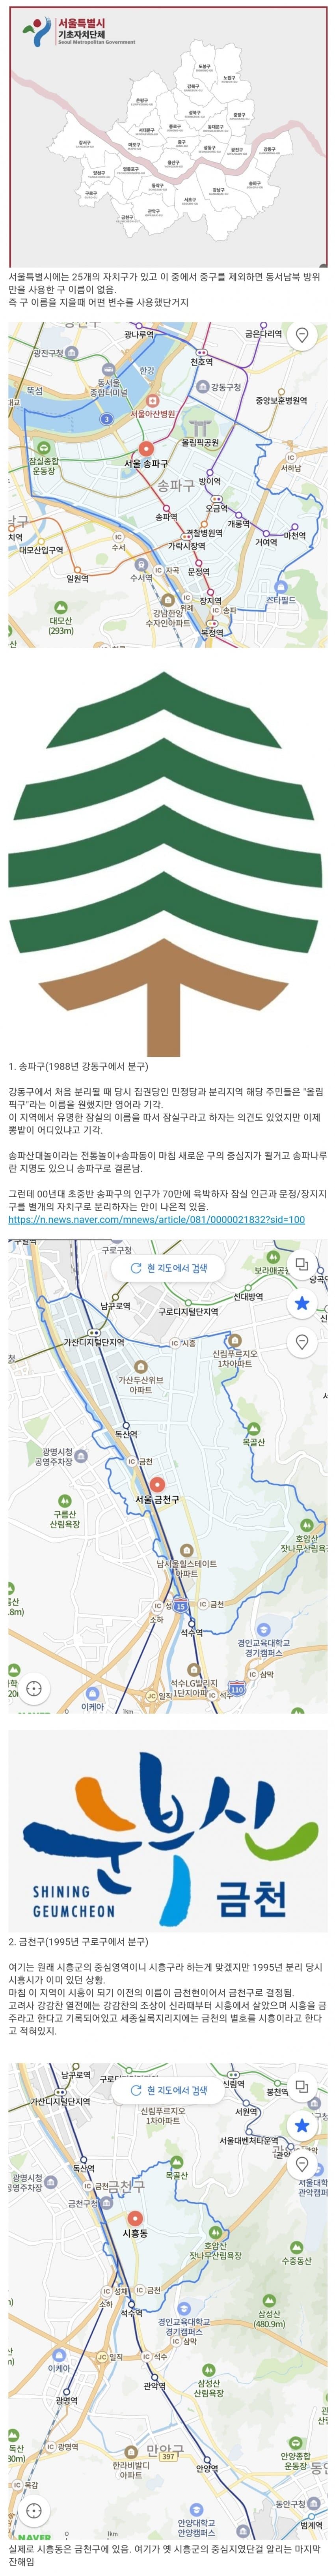 서울의 자치구 작명법